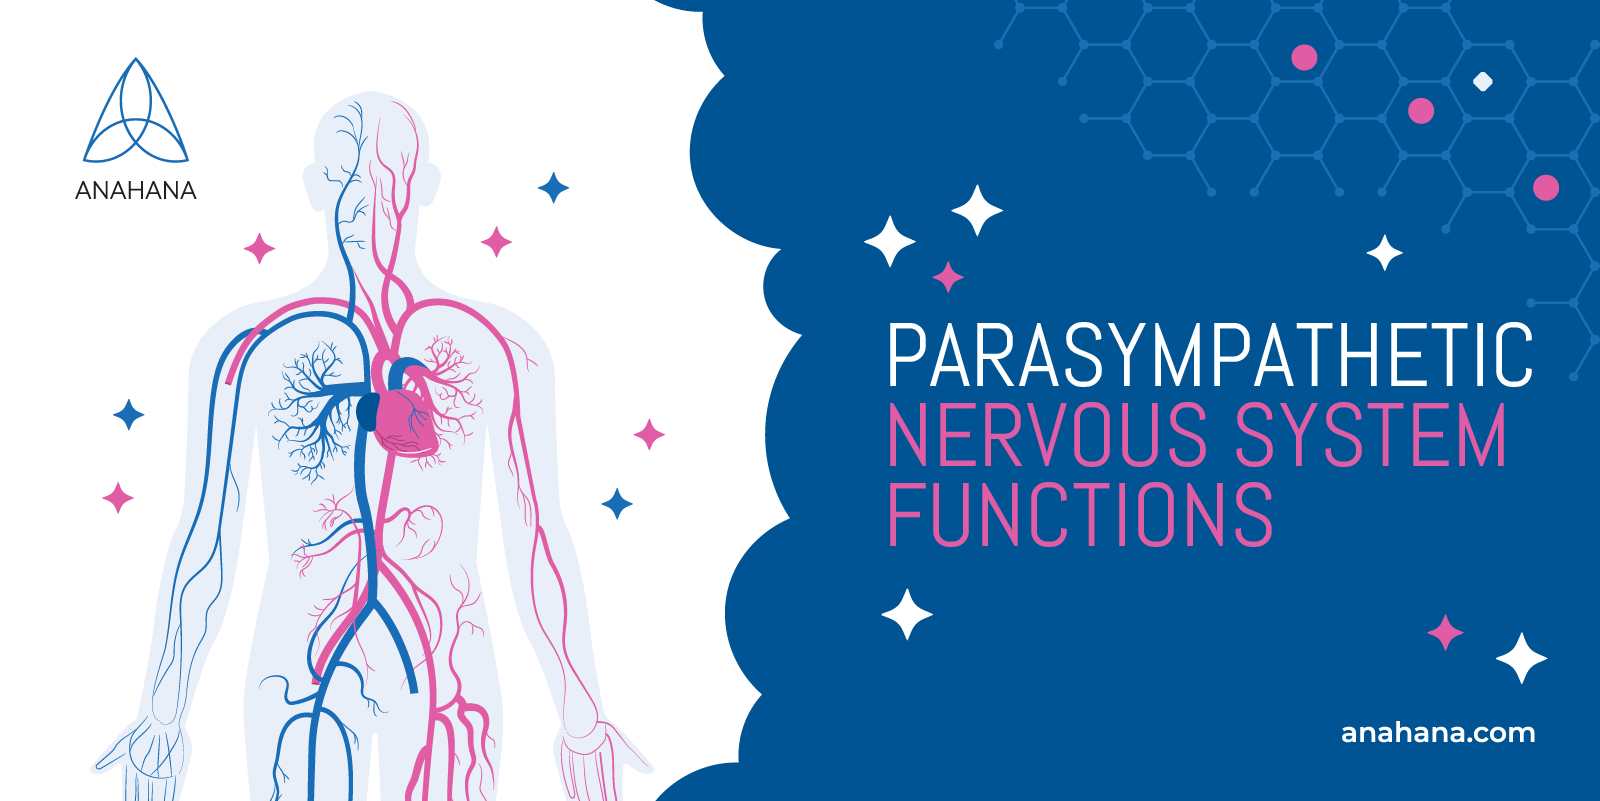 las funciones del sistema nervioso parasimpático